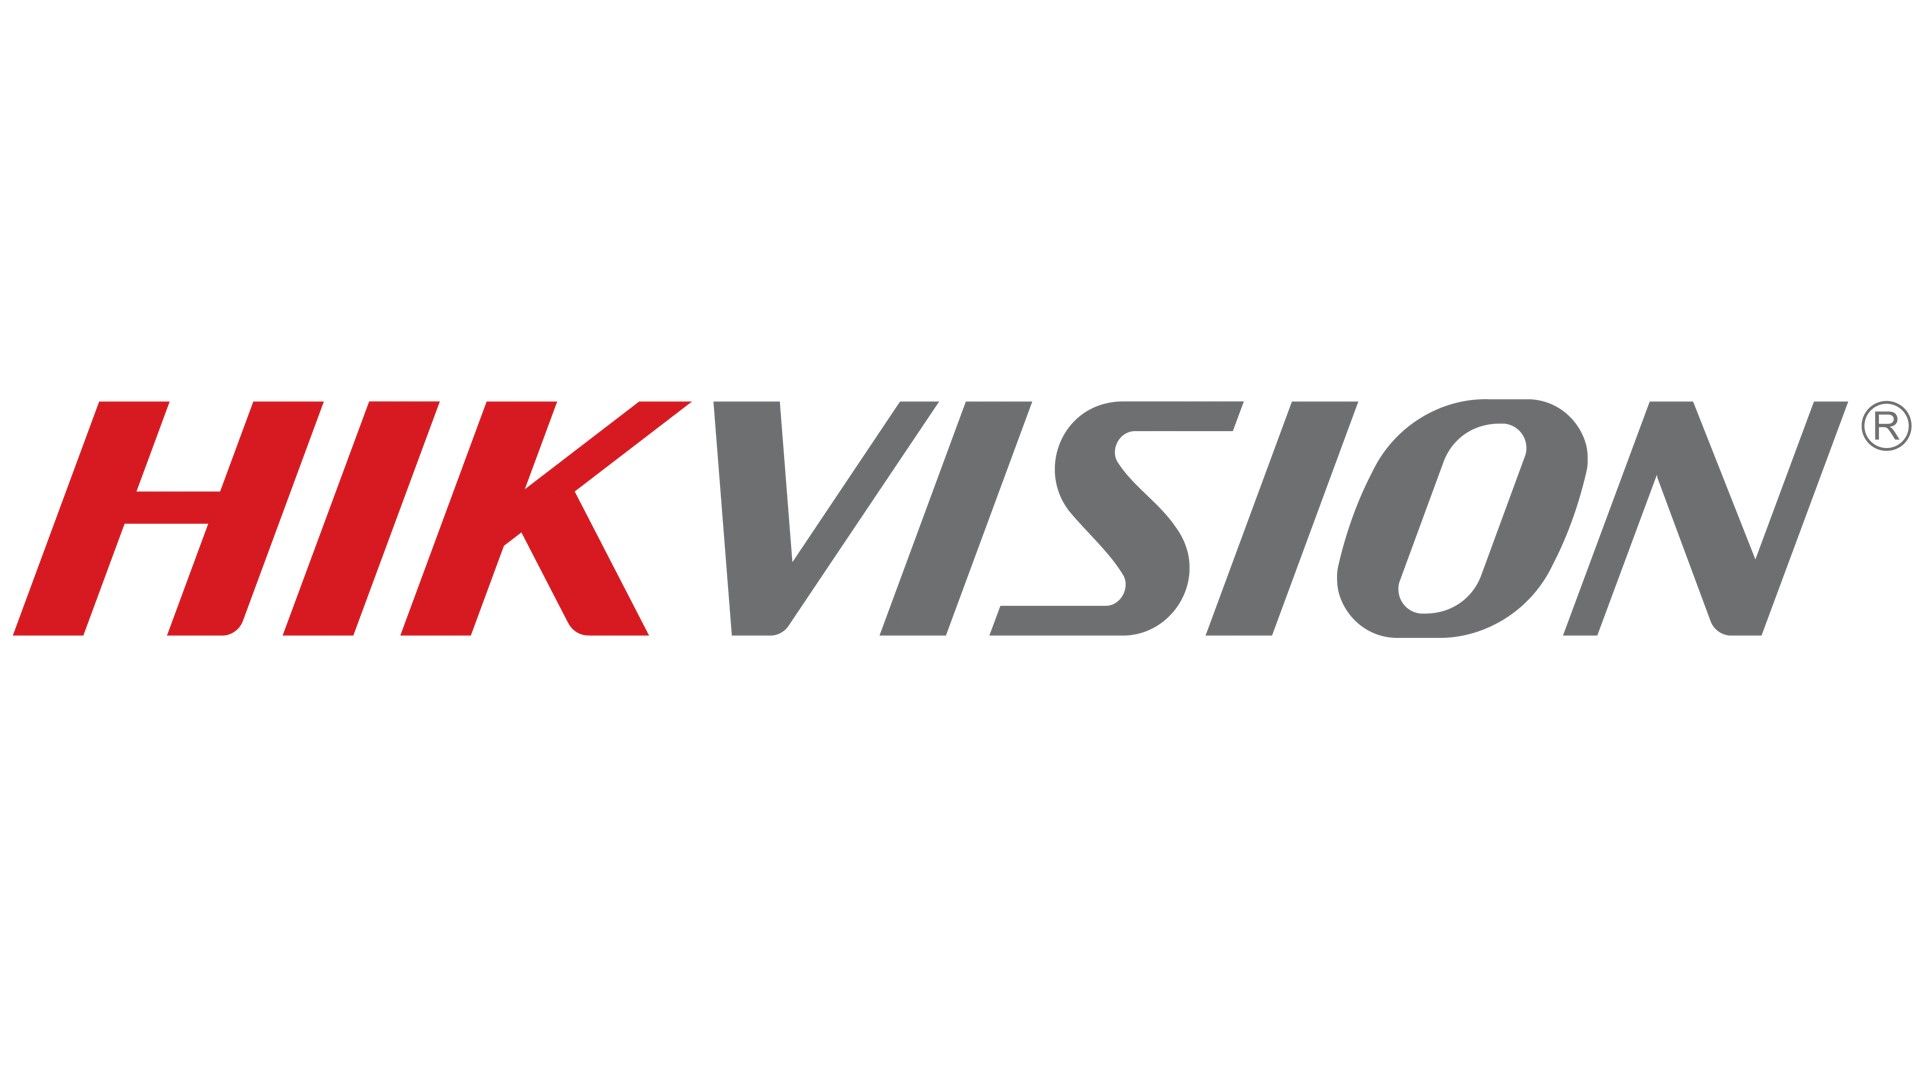 Hikvision UK & Ireland